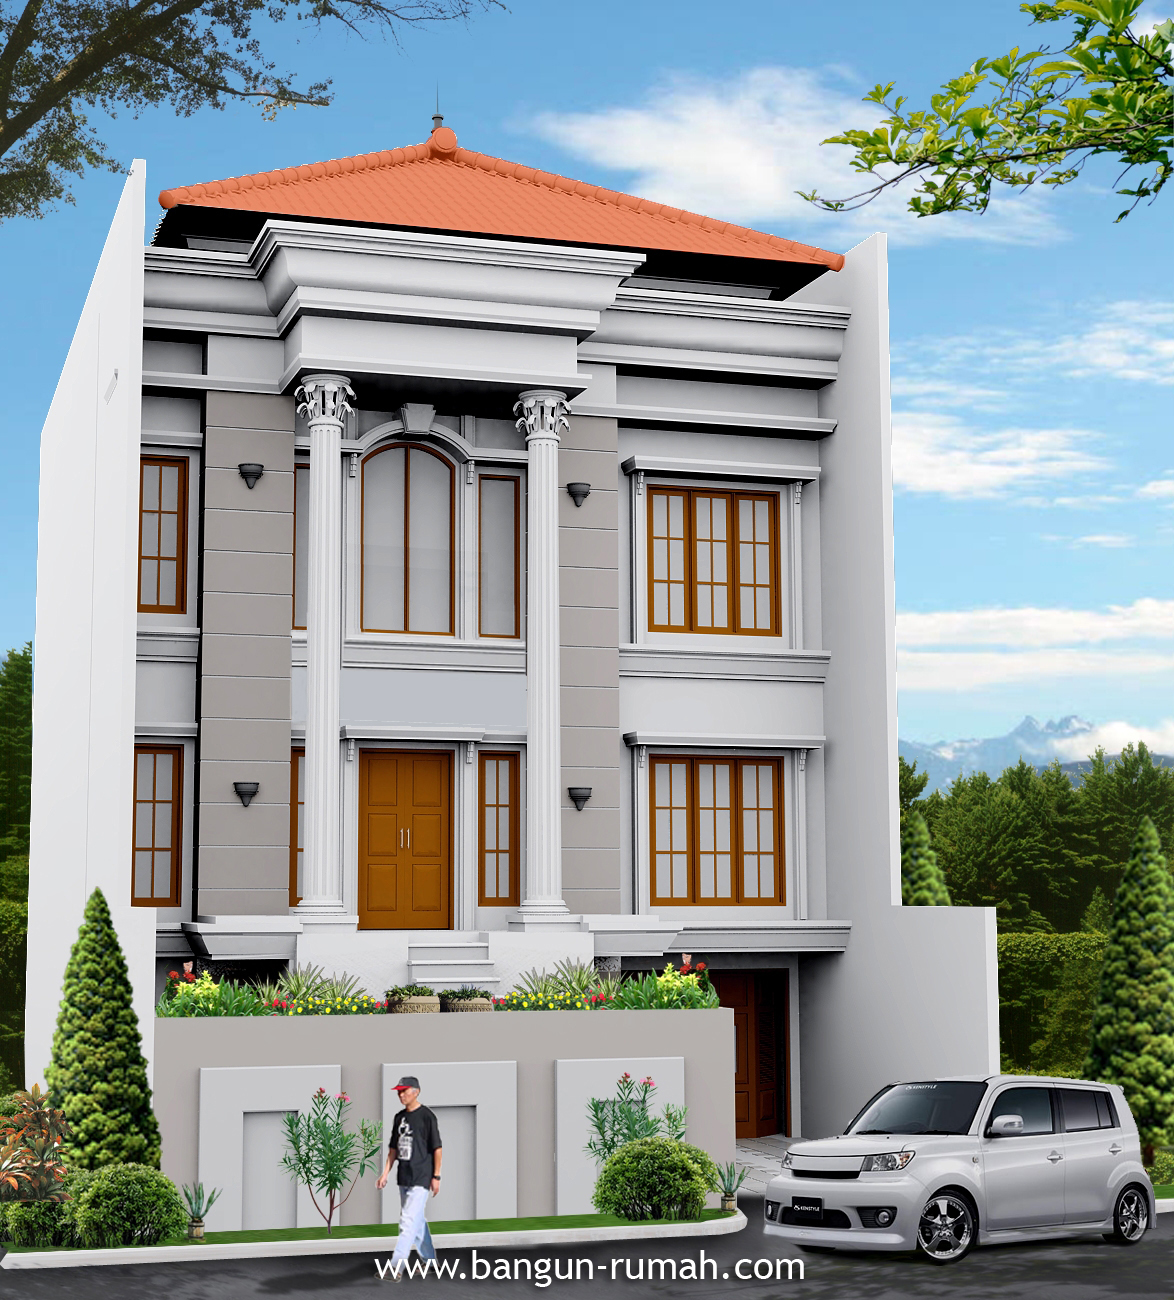 Desain Rumah Klasik 3 Lantai Di Lahan 10 X 19 M2 Dr 1019